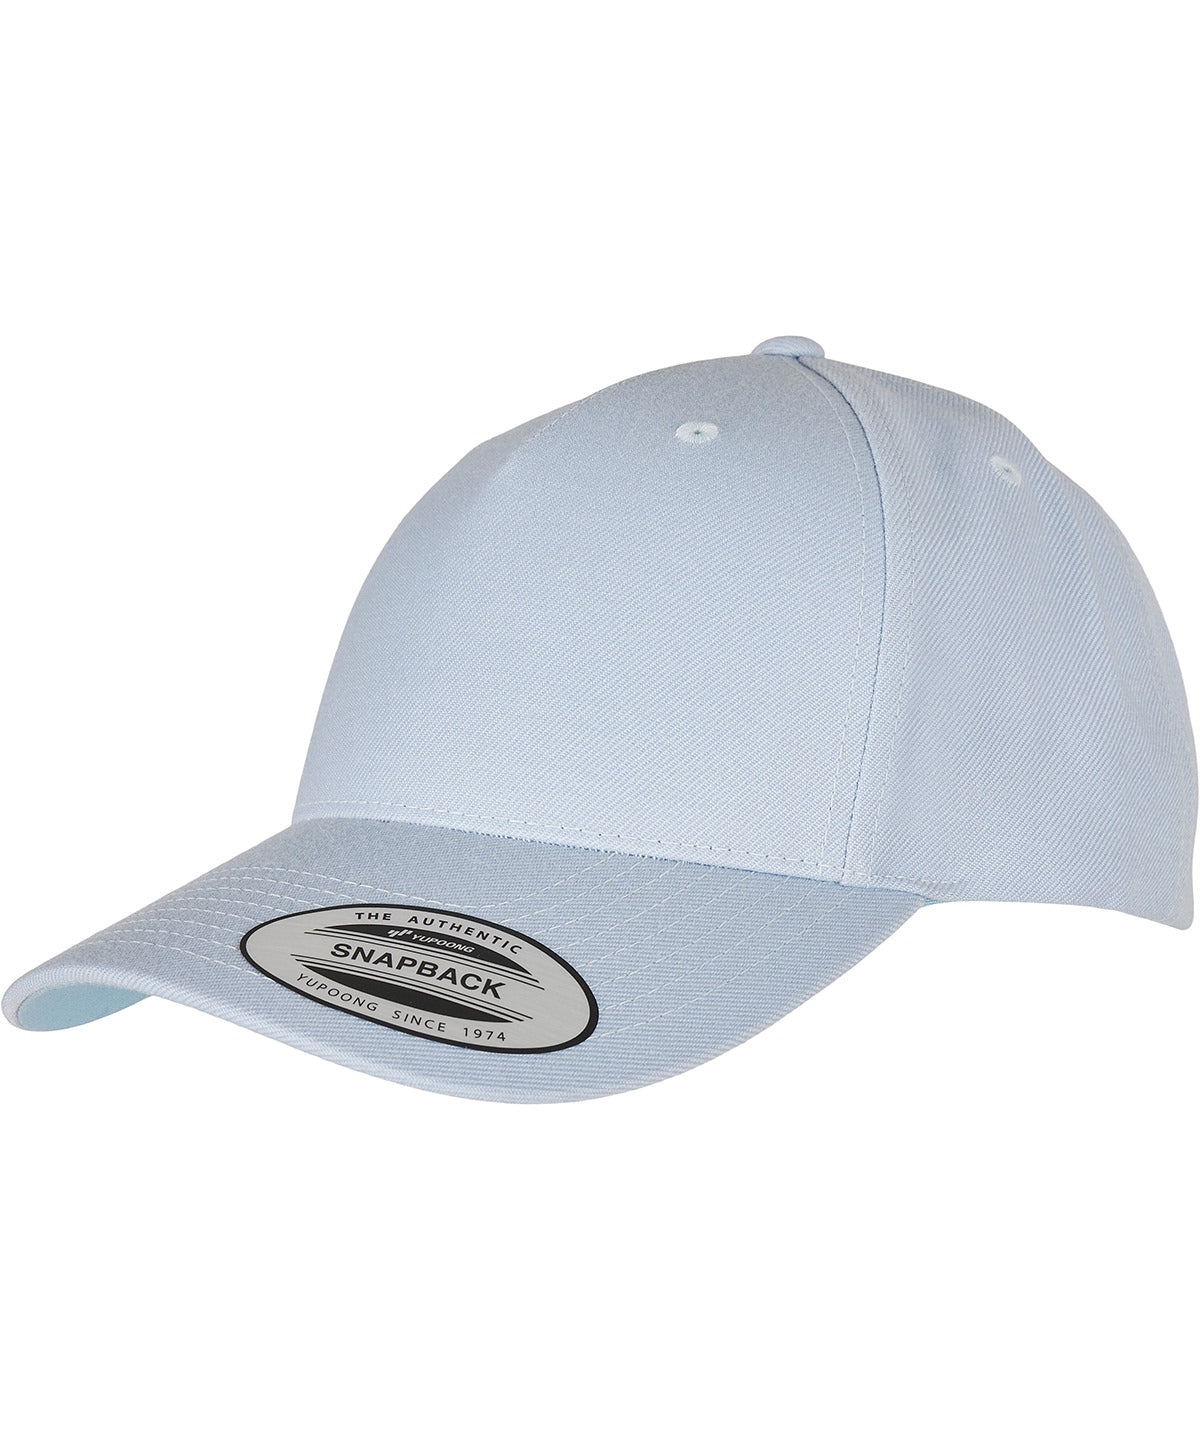 YP classics 5-panel premium curved visor snapback cap (5789M)